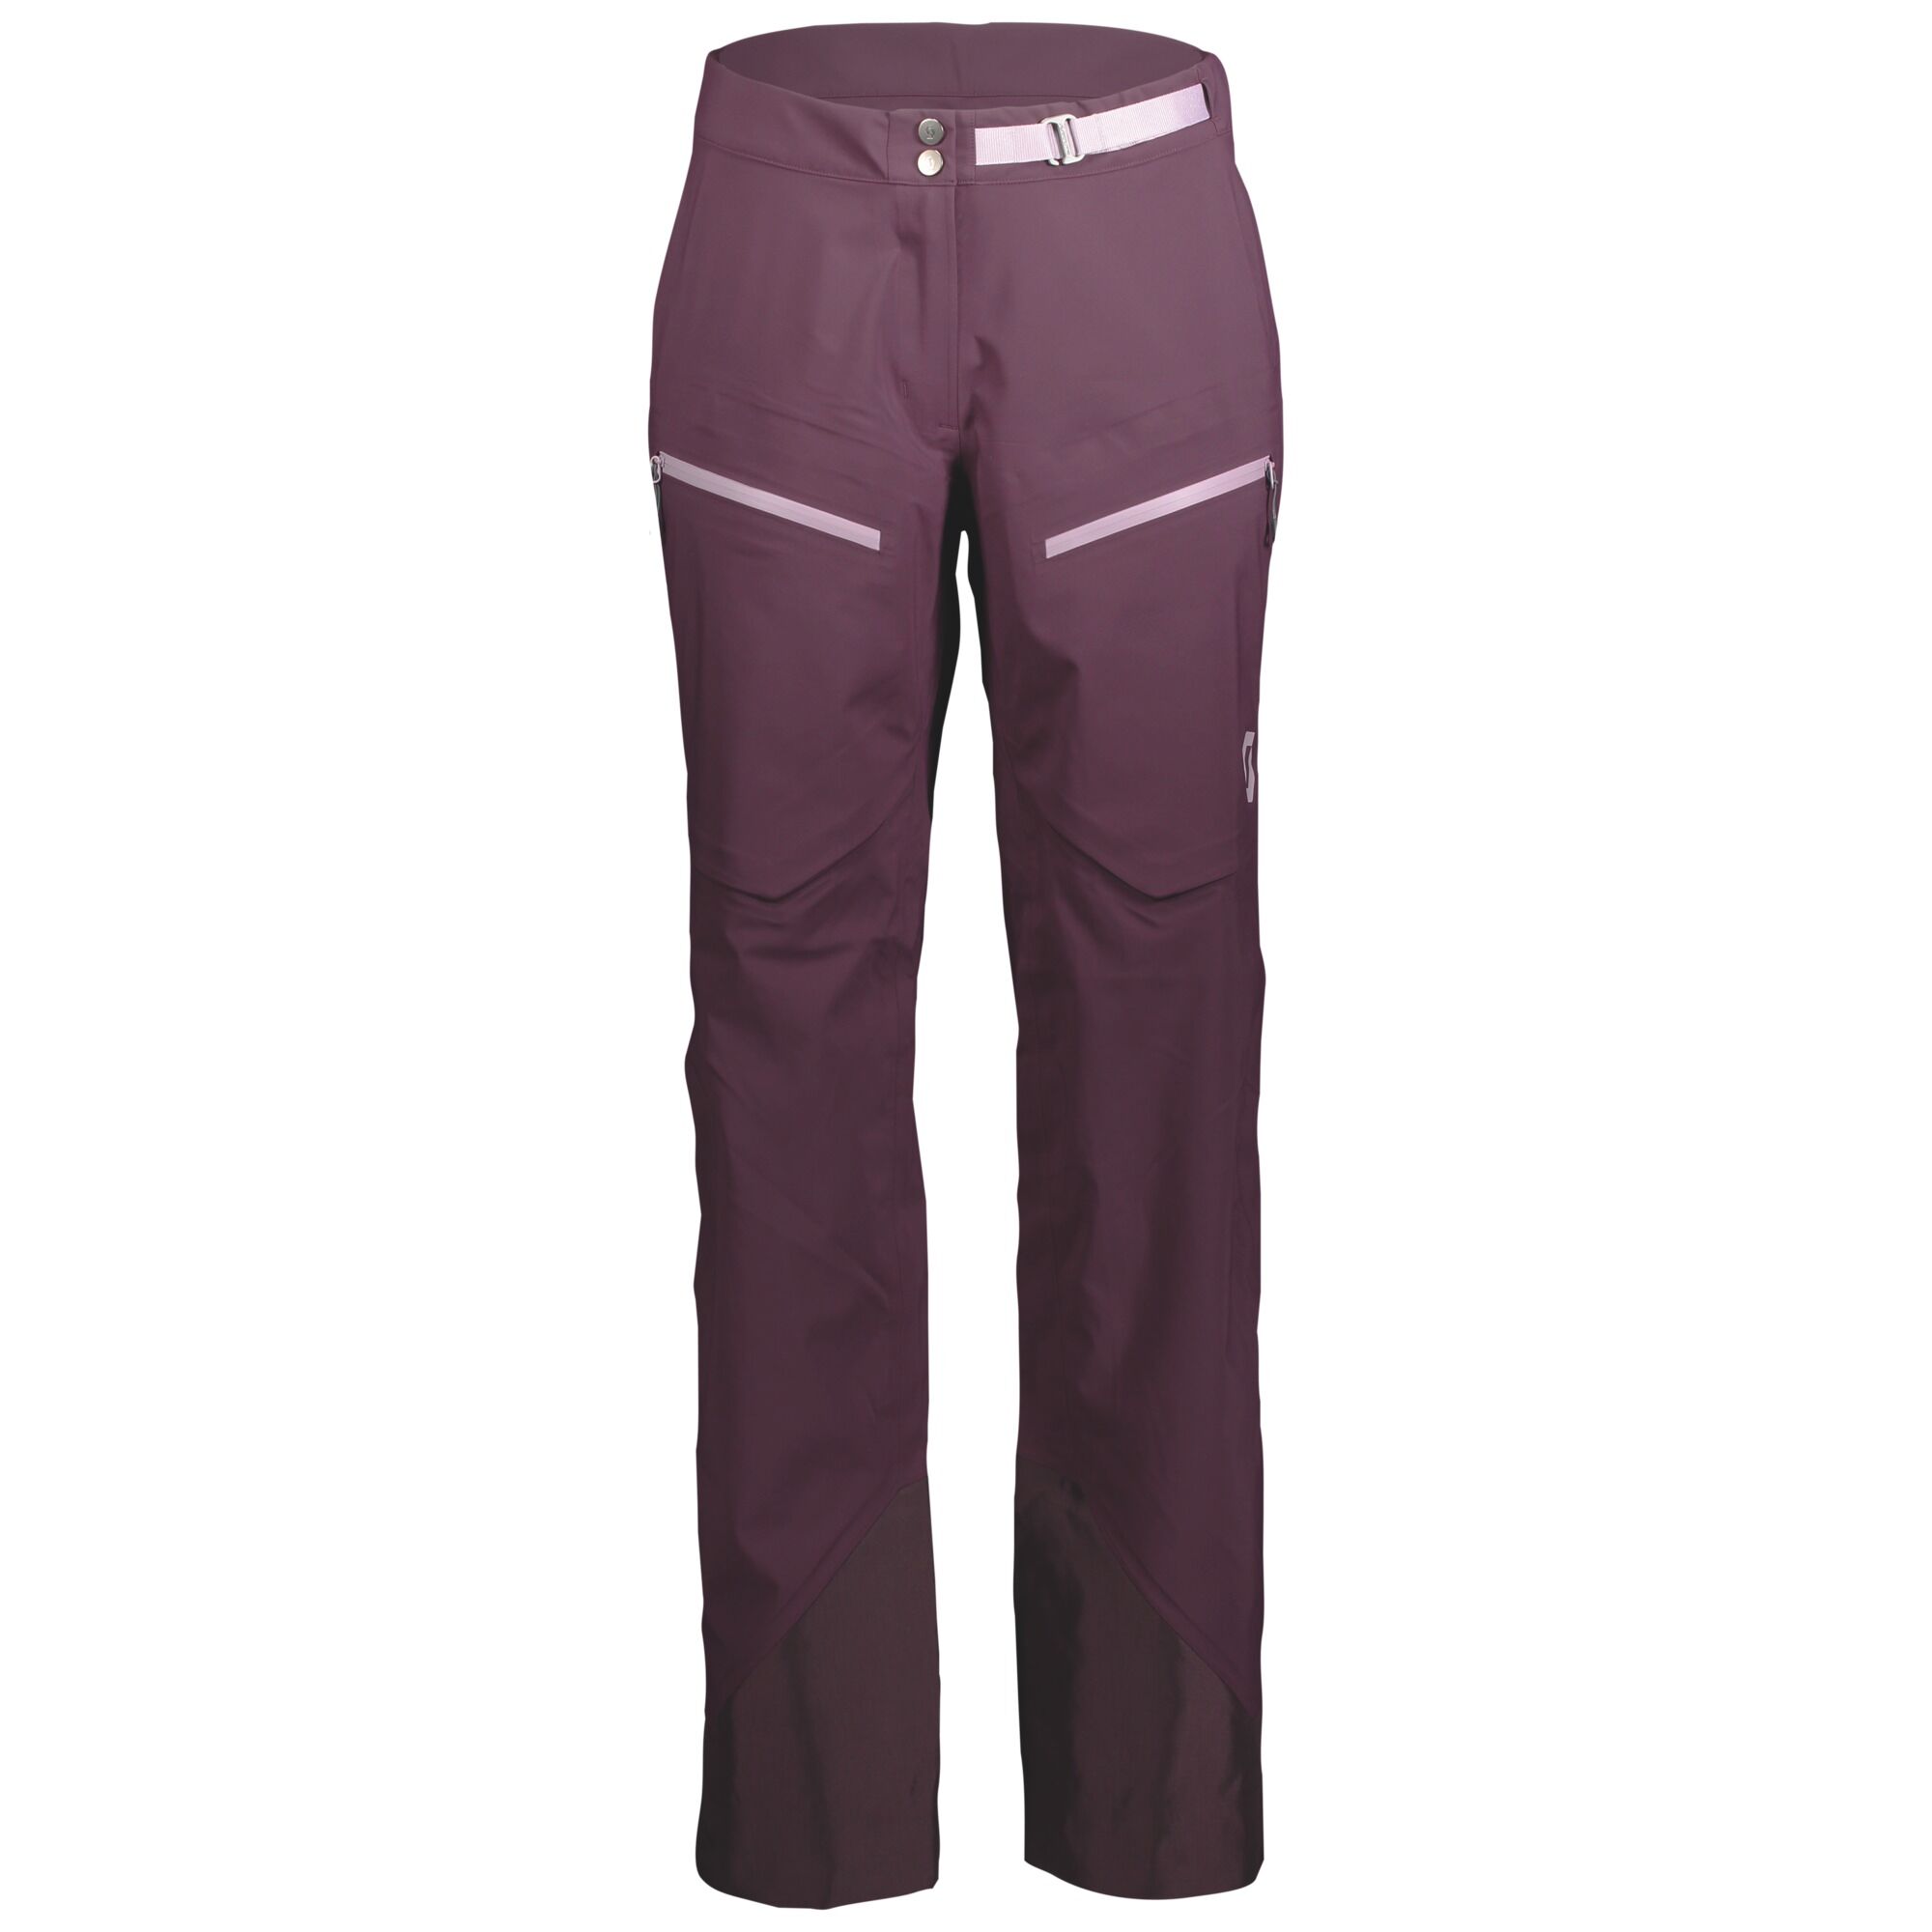 Scott Line Chaser 3L - Ski pants - Women's